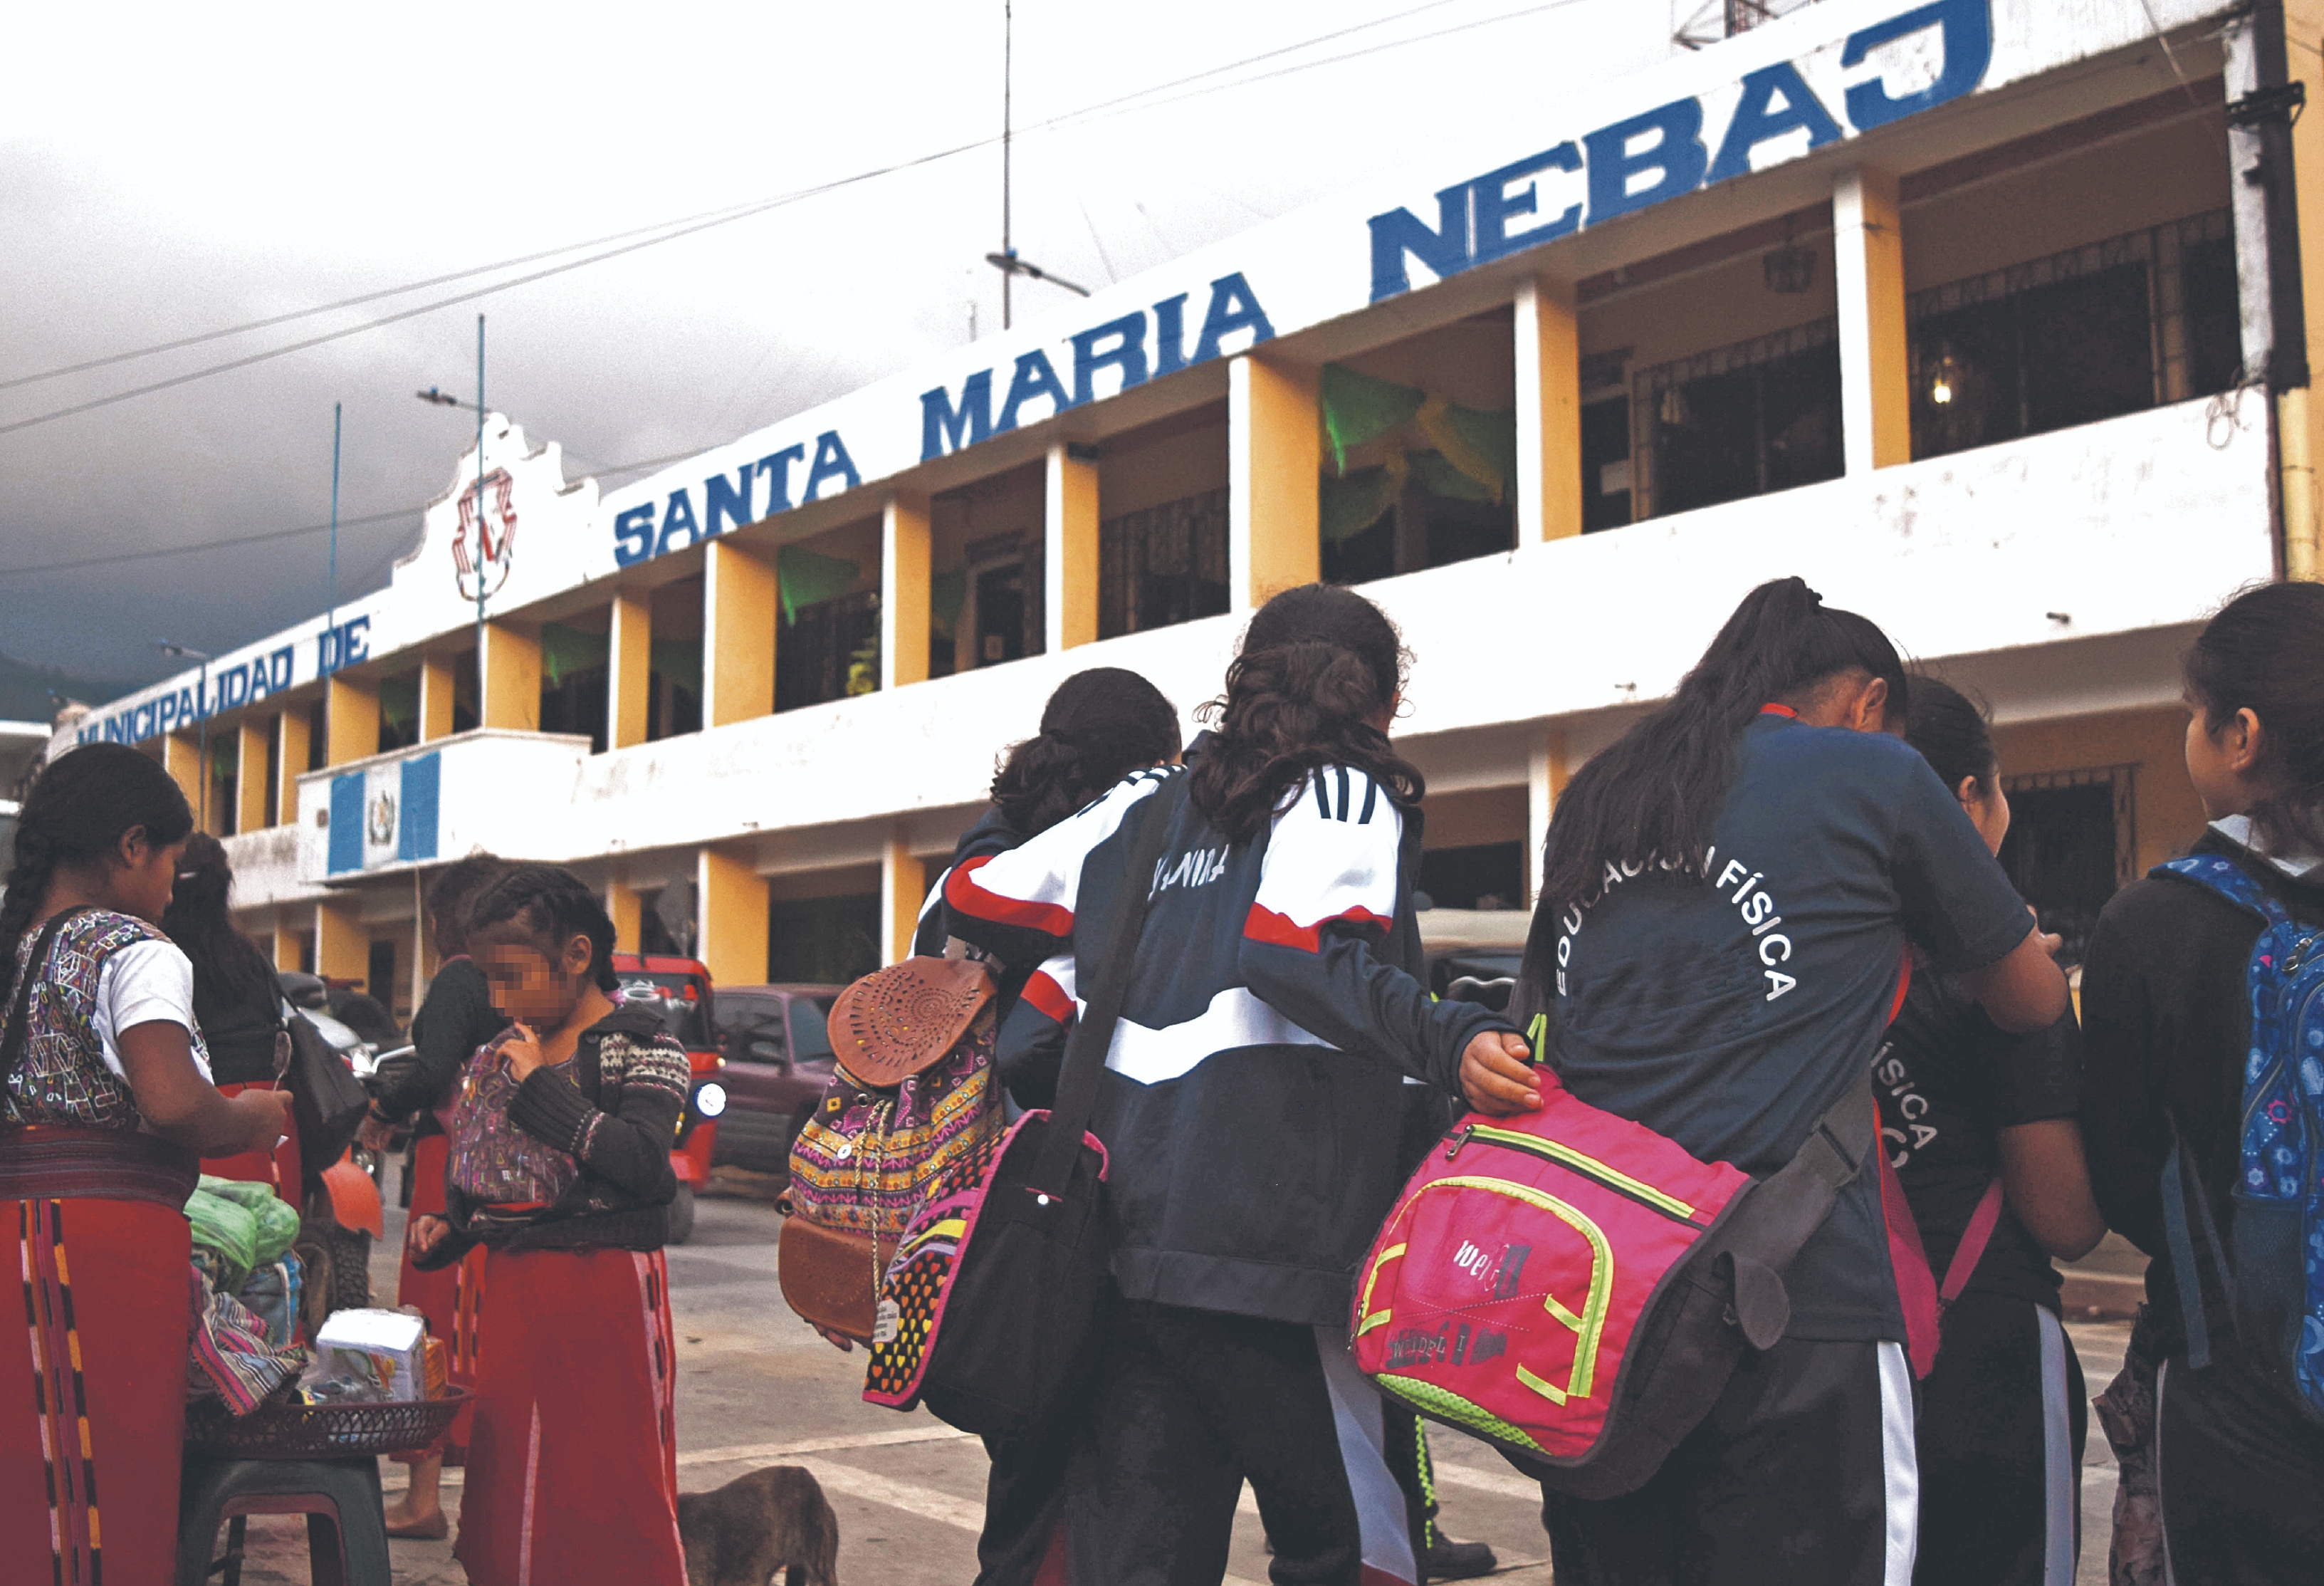 Los jóvenes en Santa María Nebaj se han enfrentado por años a la falta de oportunidades y eso les ha orillado a salir hacia la Ciudad de Guatemala o Estados Unidos para laborar, según organizaciones locales. (Foto Prensa Libre: Raúl Barreno Castillo).